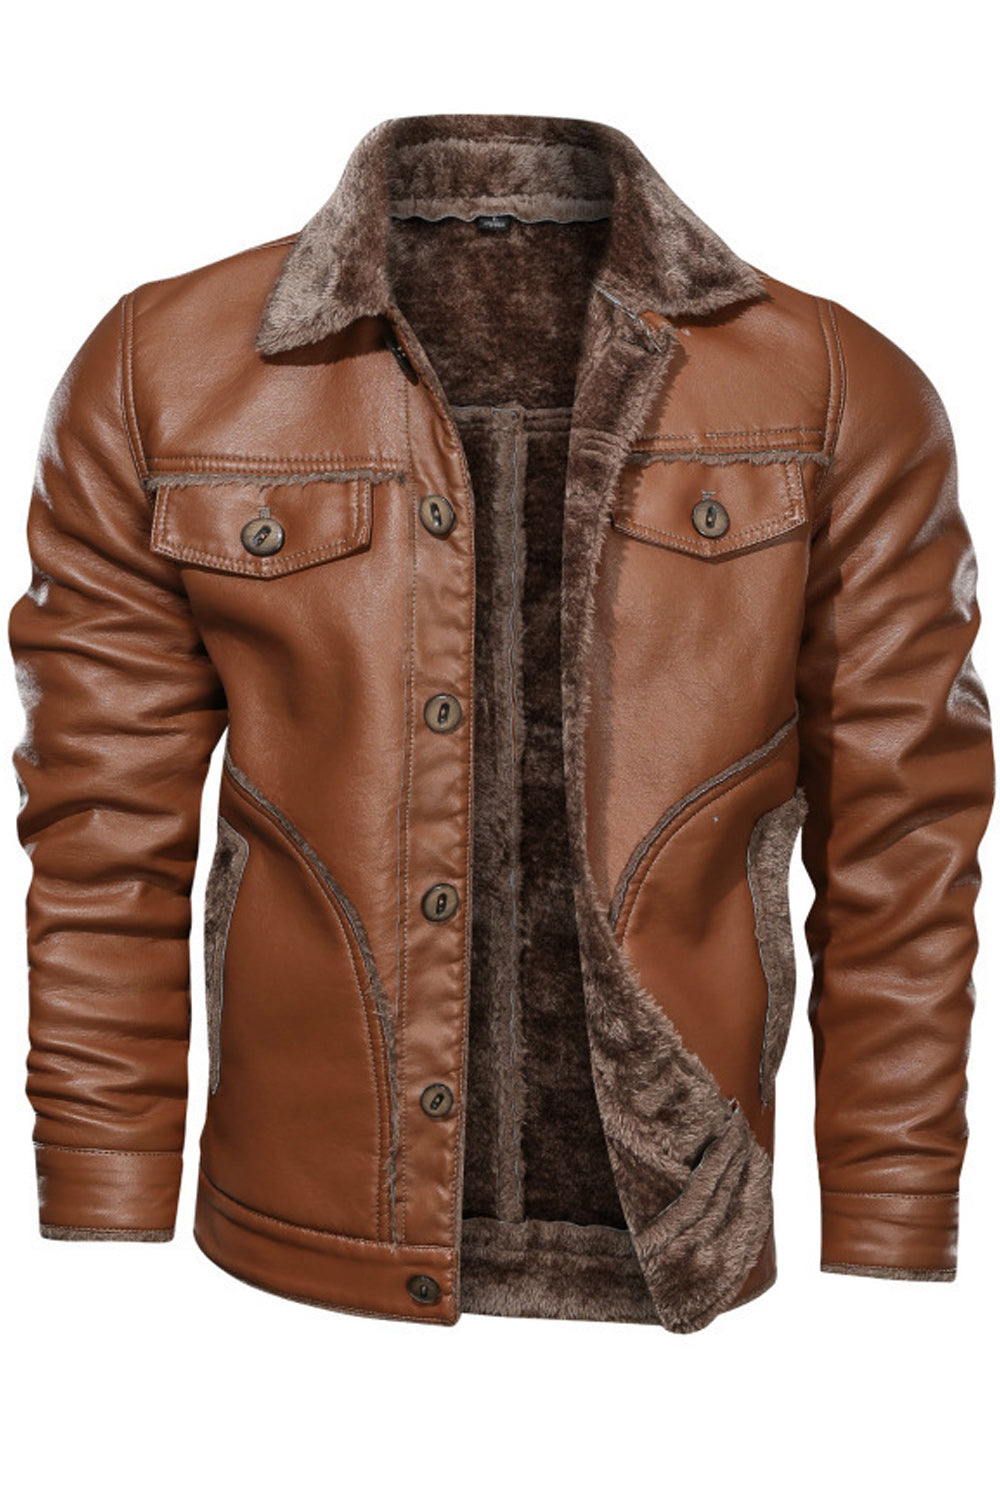 Men Amazing Collar Neck Pocket Styling Long Sleeve Cozy Leather Jacket - MLJ90331